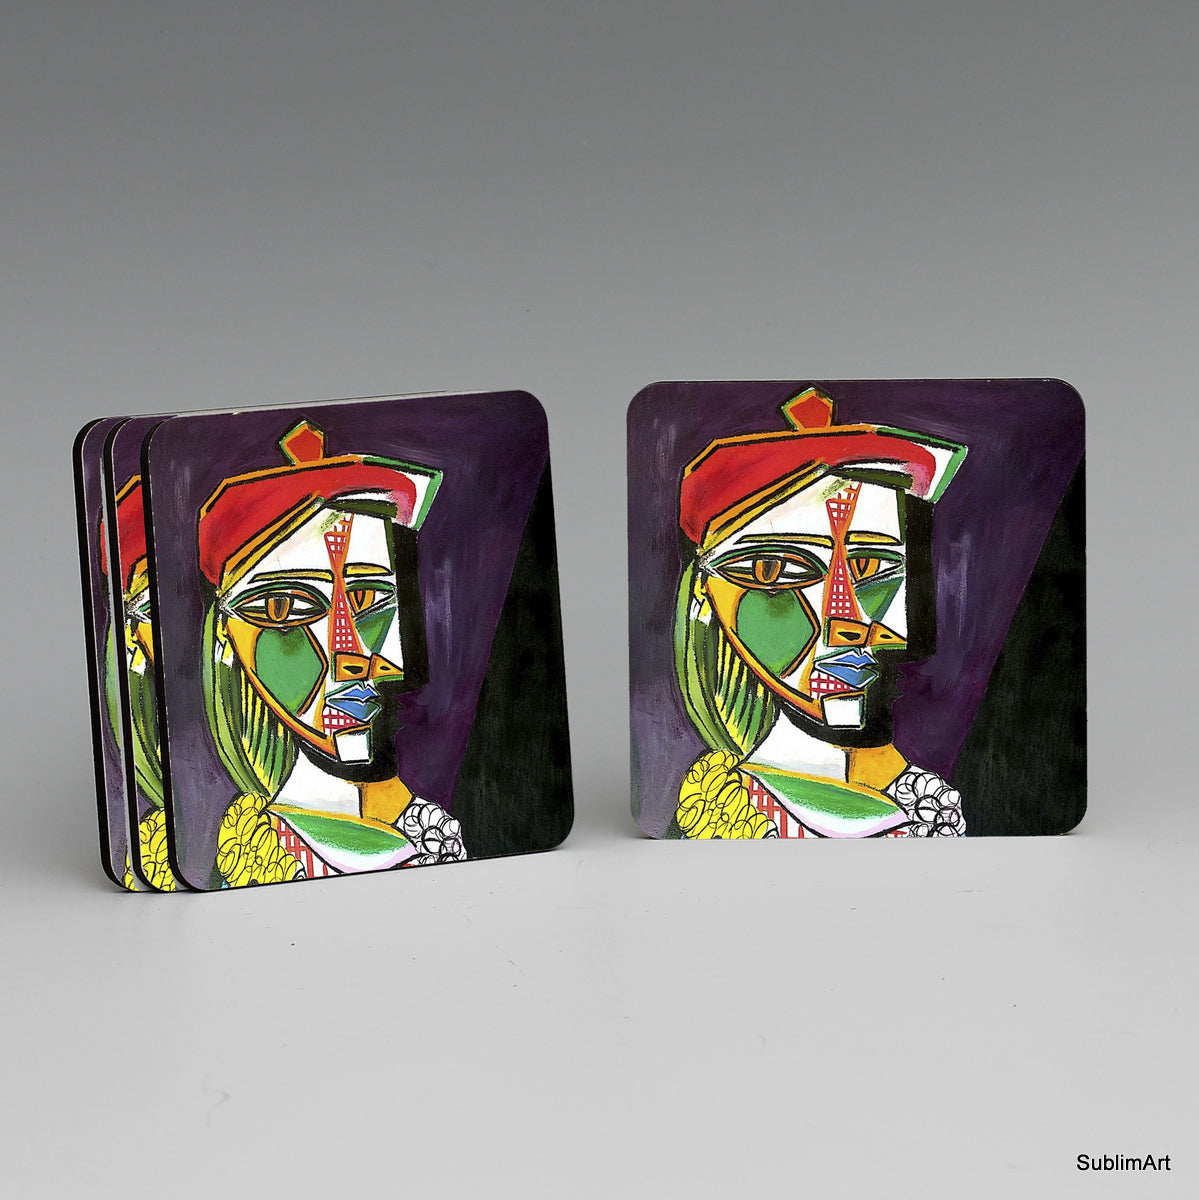 SUBLIMART: MDF Hardboard Set of 4 Coasters - Design: Picasso Modernism 04